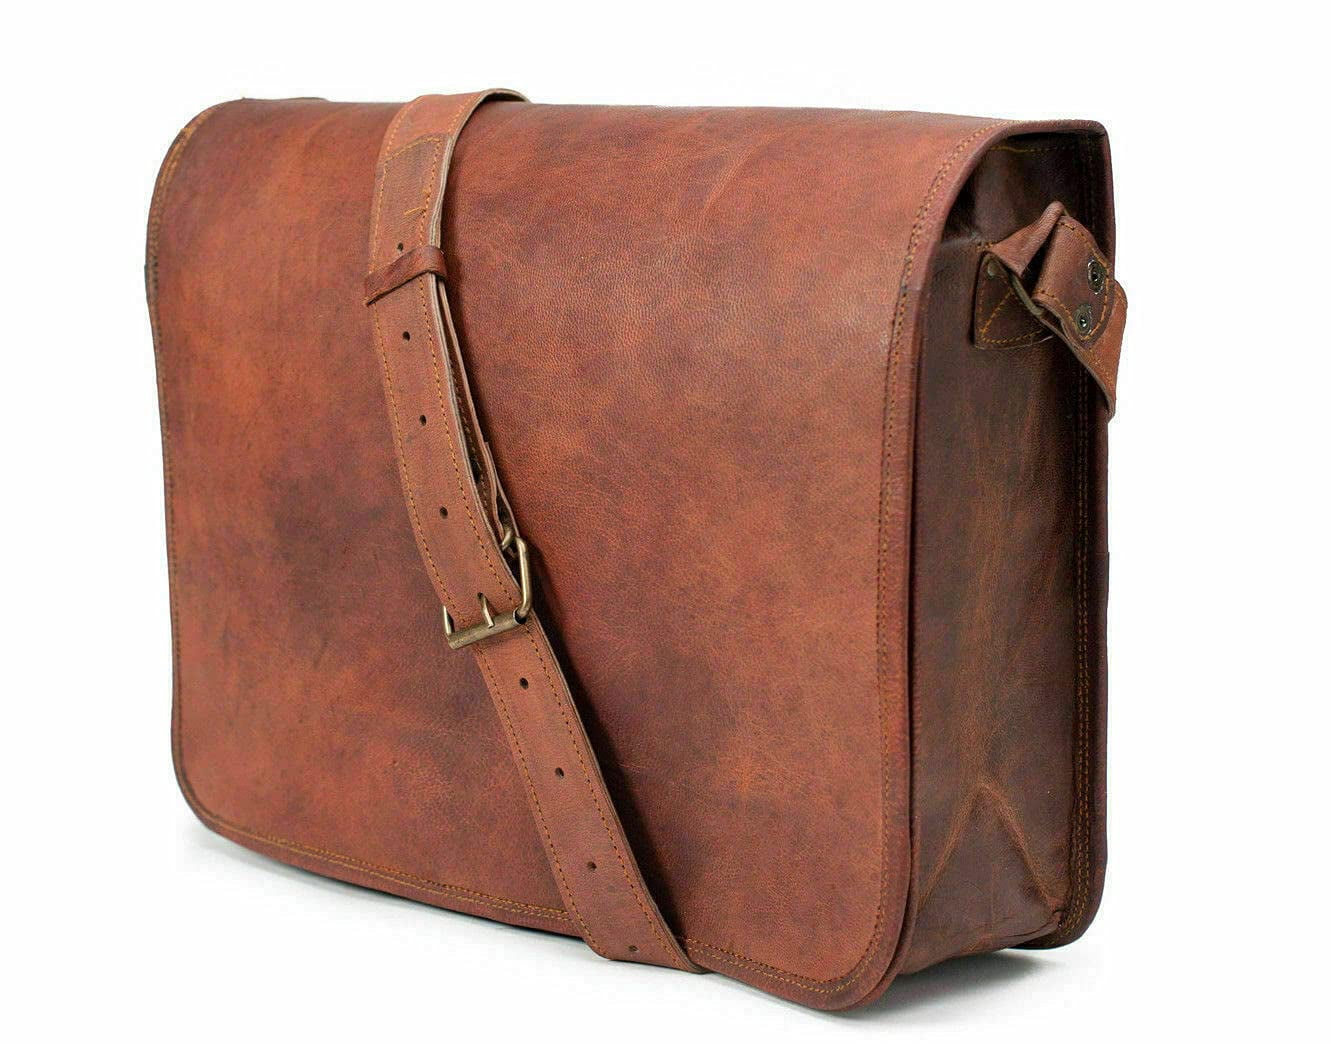 Bag Leather Vintage Shoulder Purse Brown Handbag Messenger Women's Laptop Large 